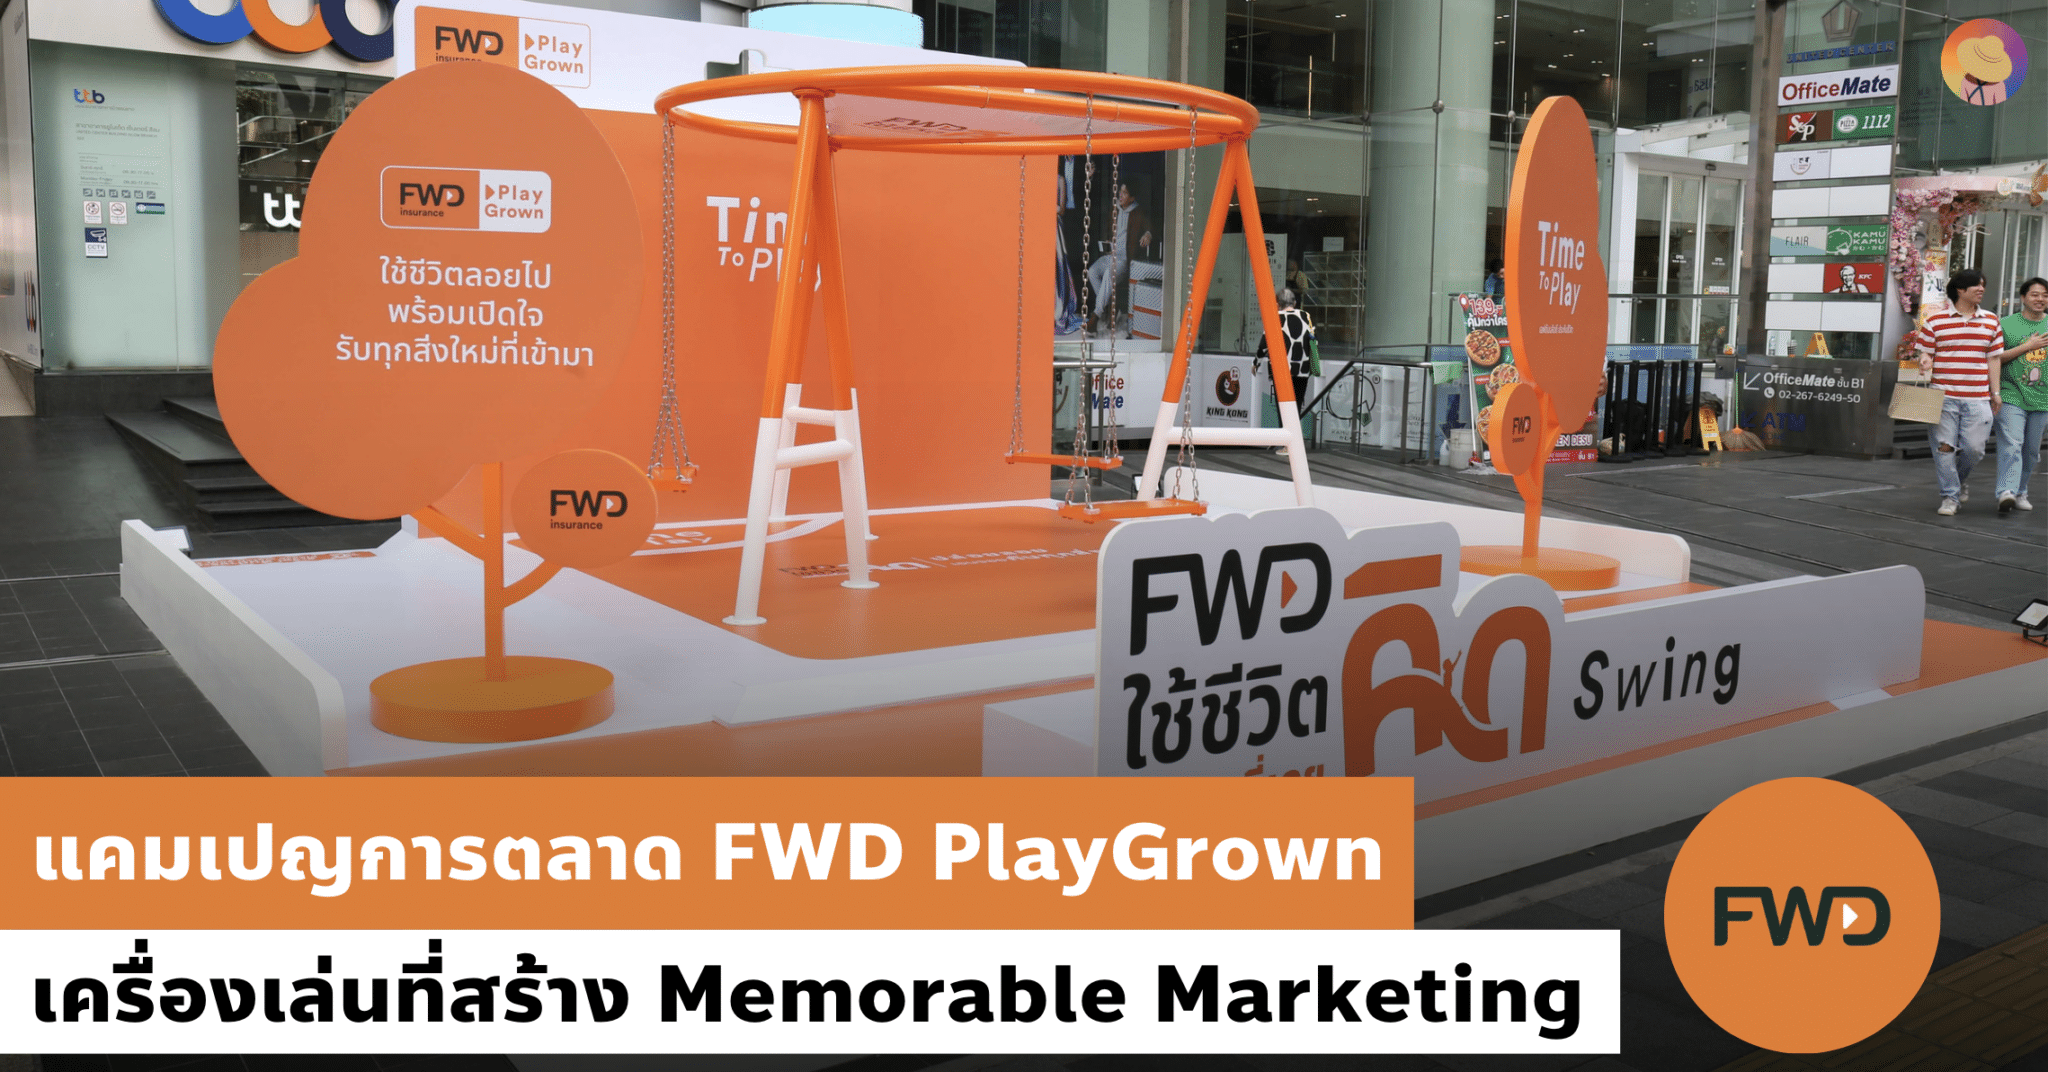 แคมเปญการตลาด FWD PlayGrown เครื่องเล่นที่สร้าง Memorable Marketing